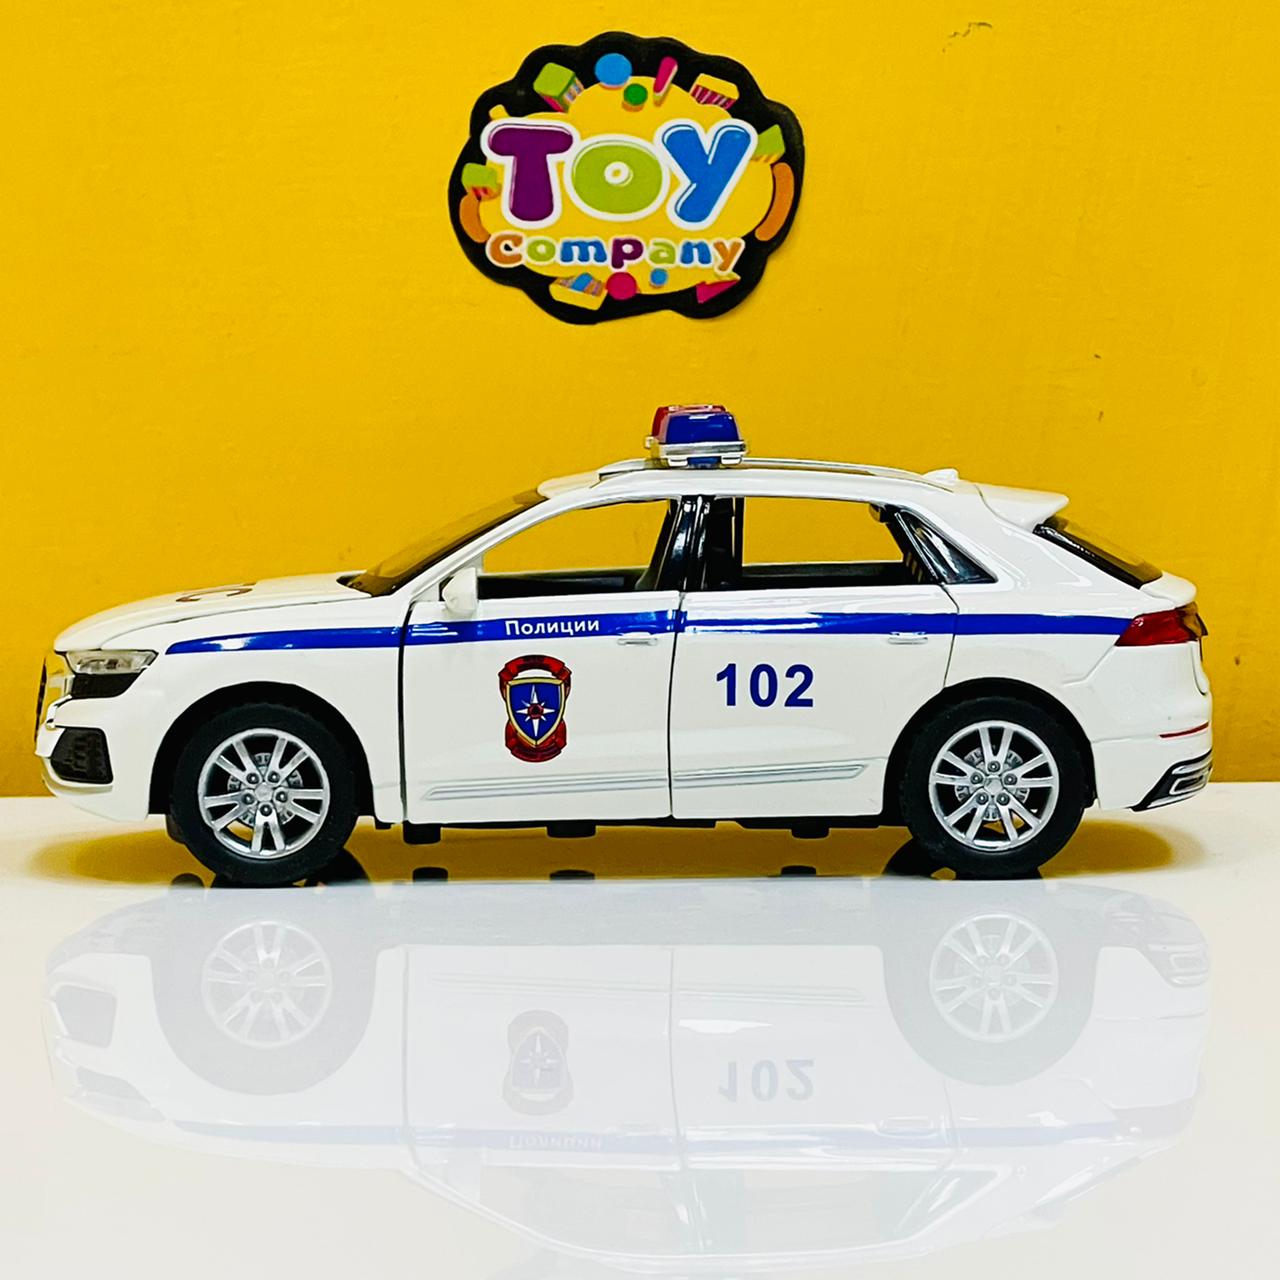 1:32 Diecast Audi Q8 Police Car